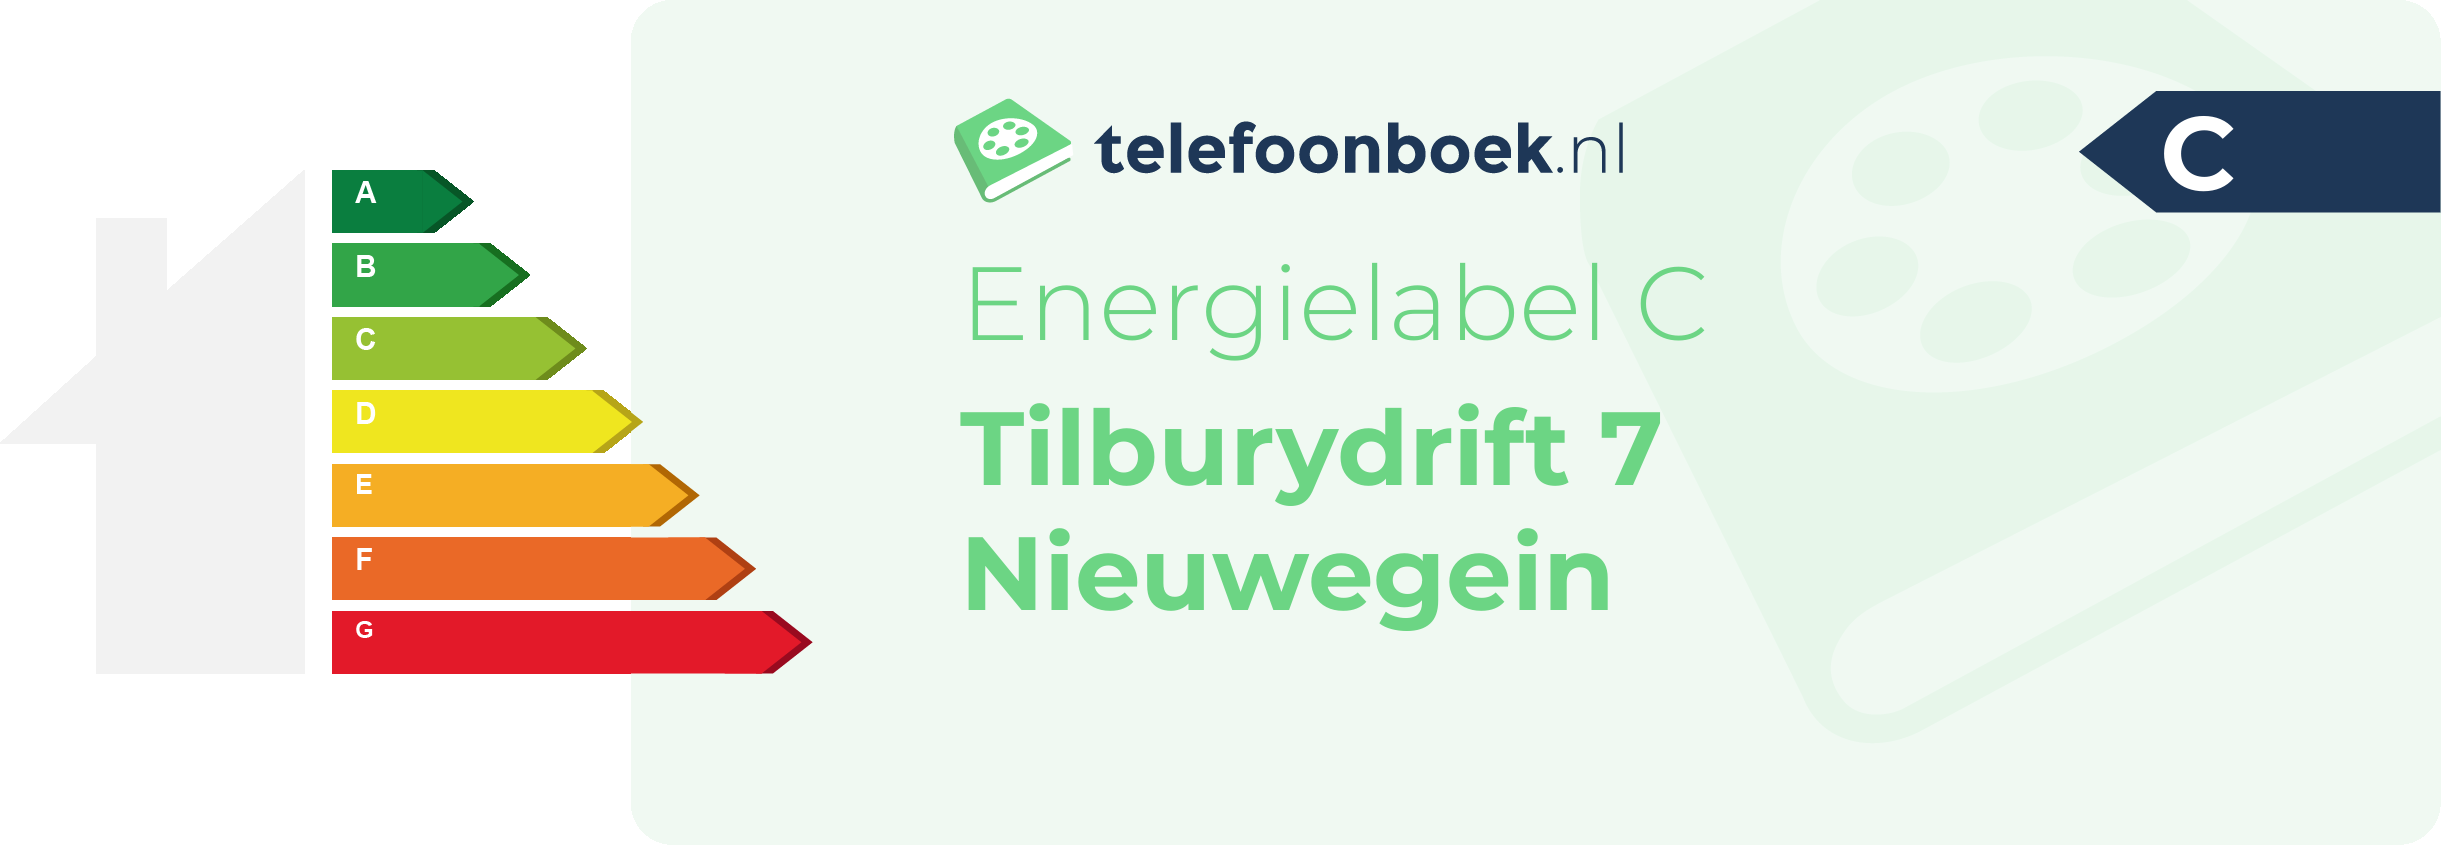 Energielabel Tilburydrift 7 Nieuwegein